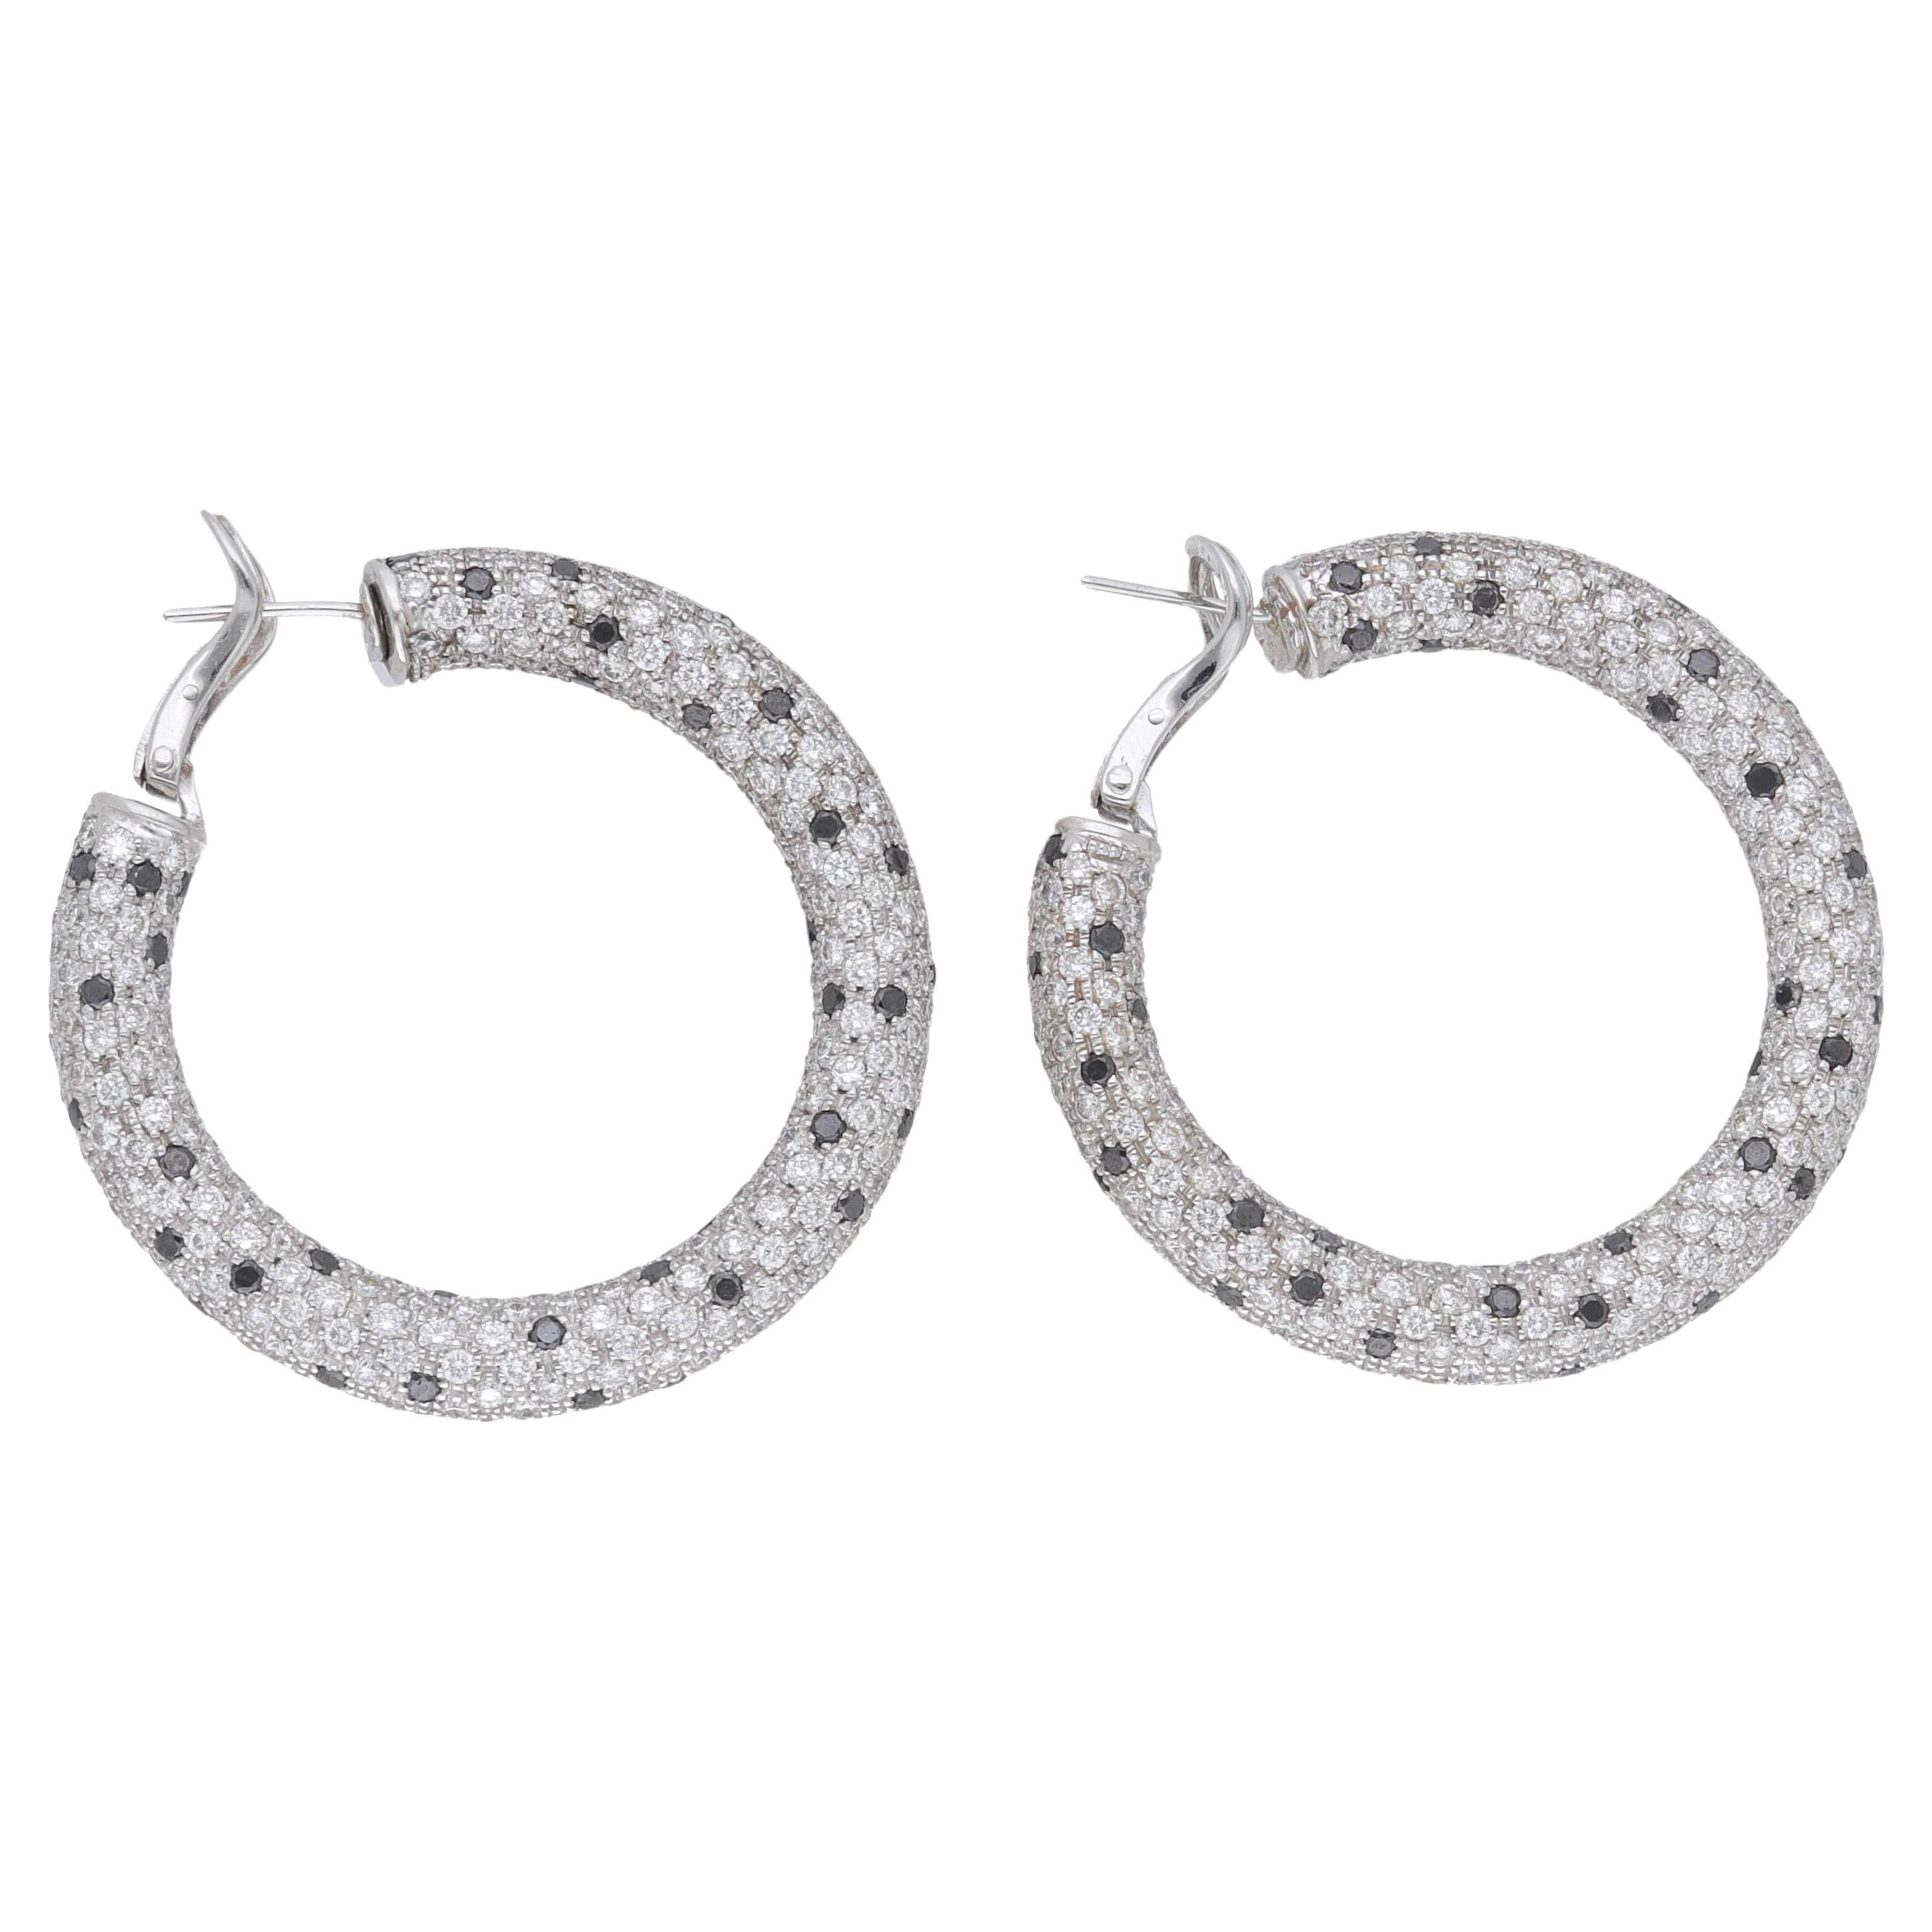 Fraleoni 18 Kt. White Gold Black and White Diamonds Hoops Earrings For Sale